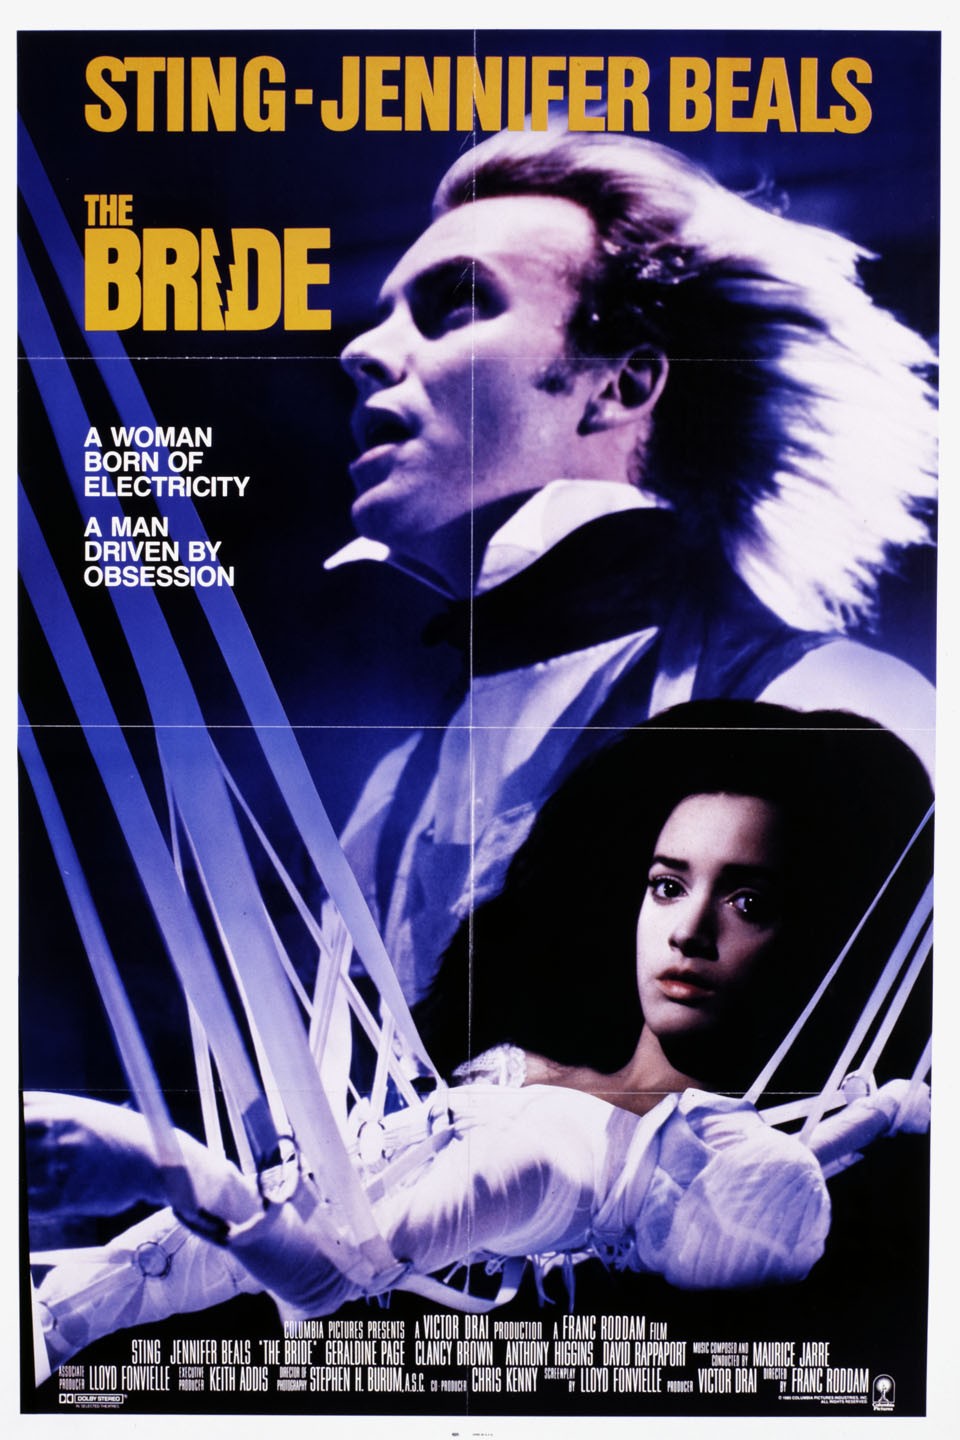 The Bride (1973 American film) - Wikipedia